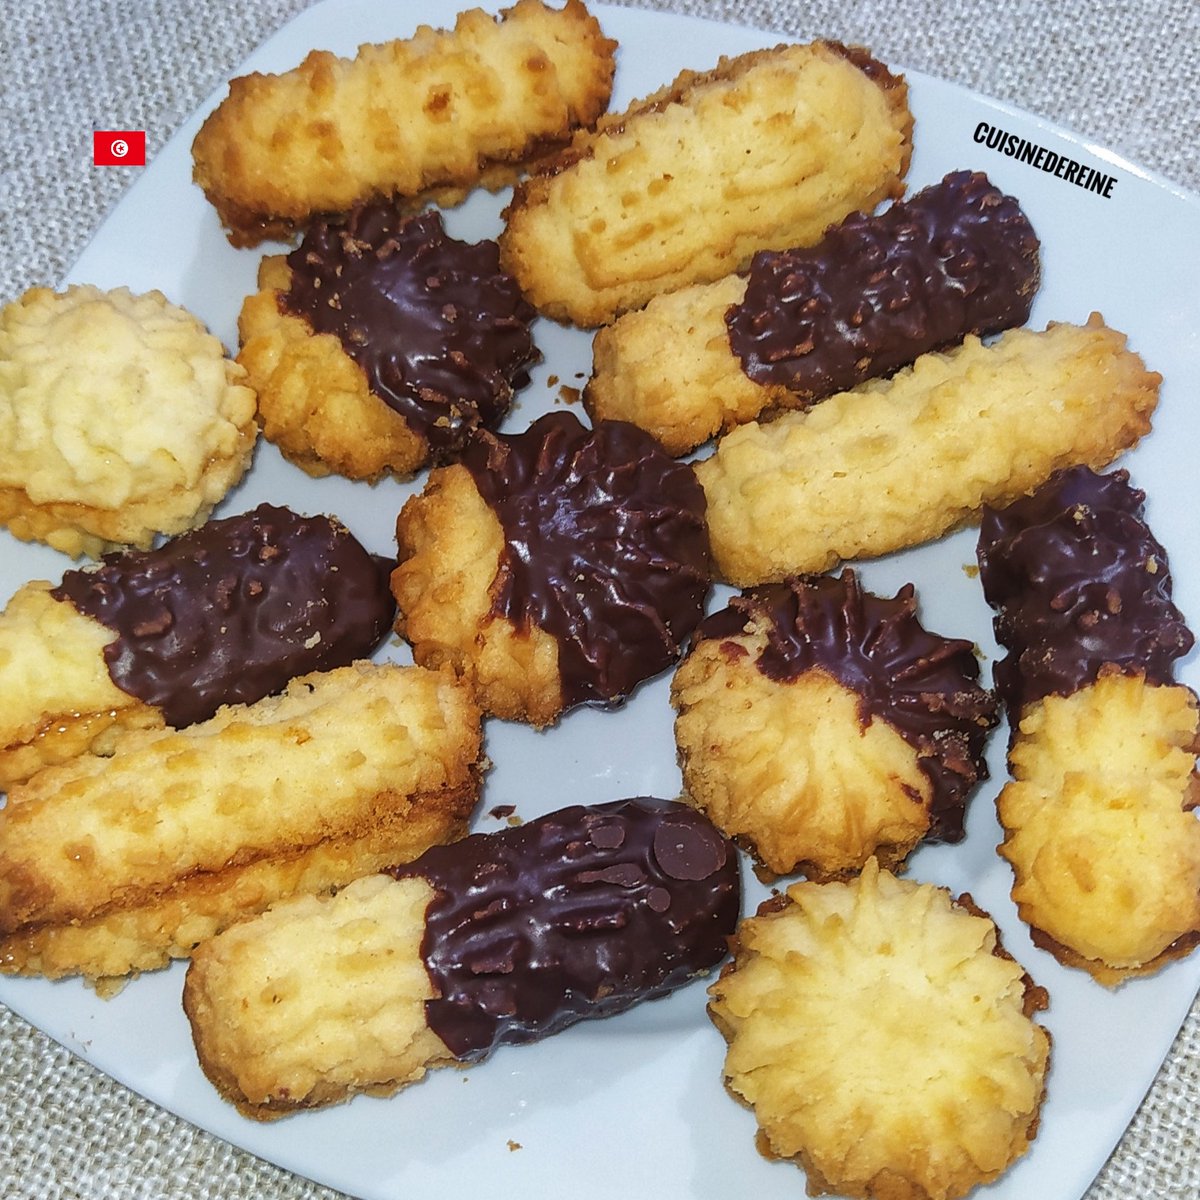 Petit fours
#Food #Biscuit #Tunisia